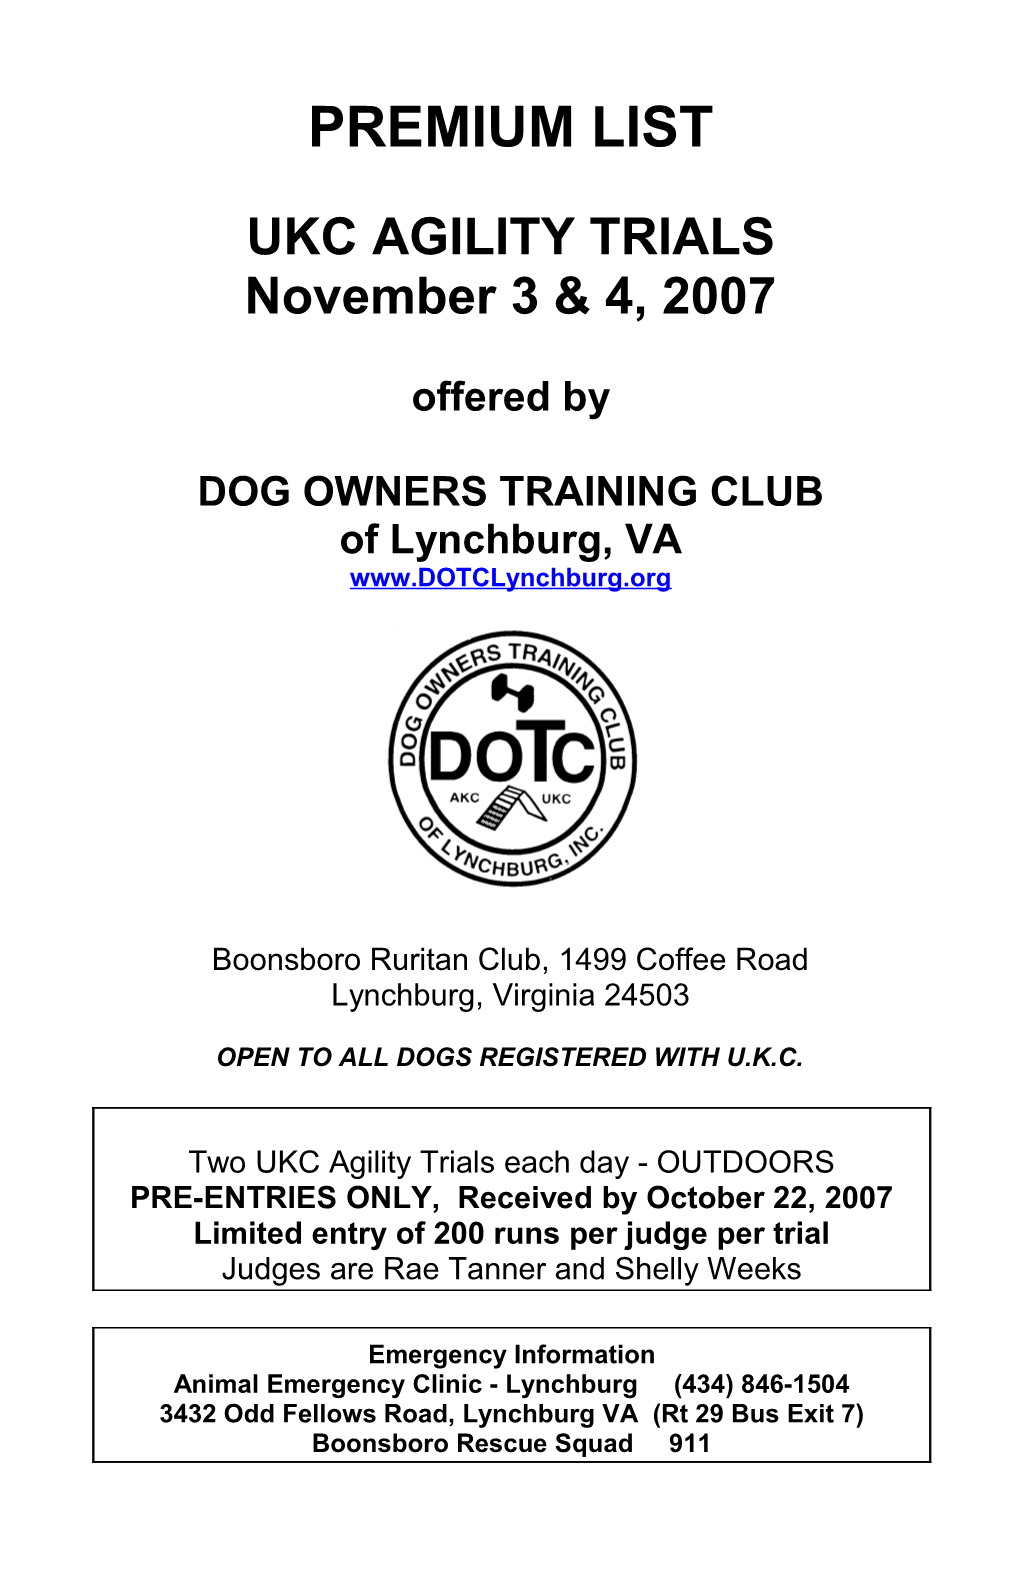 Dog Owners Training Club